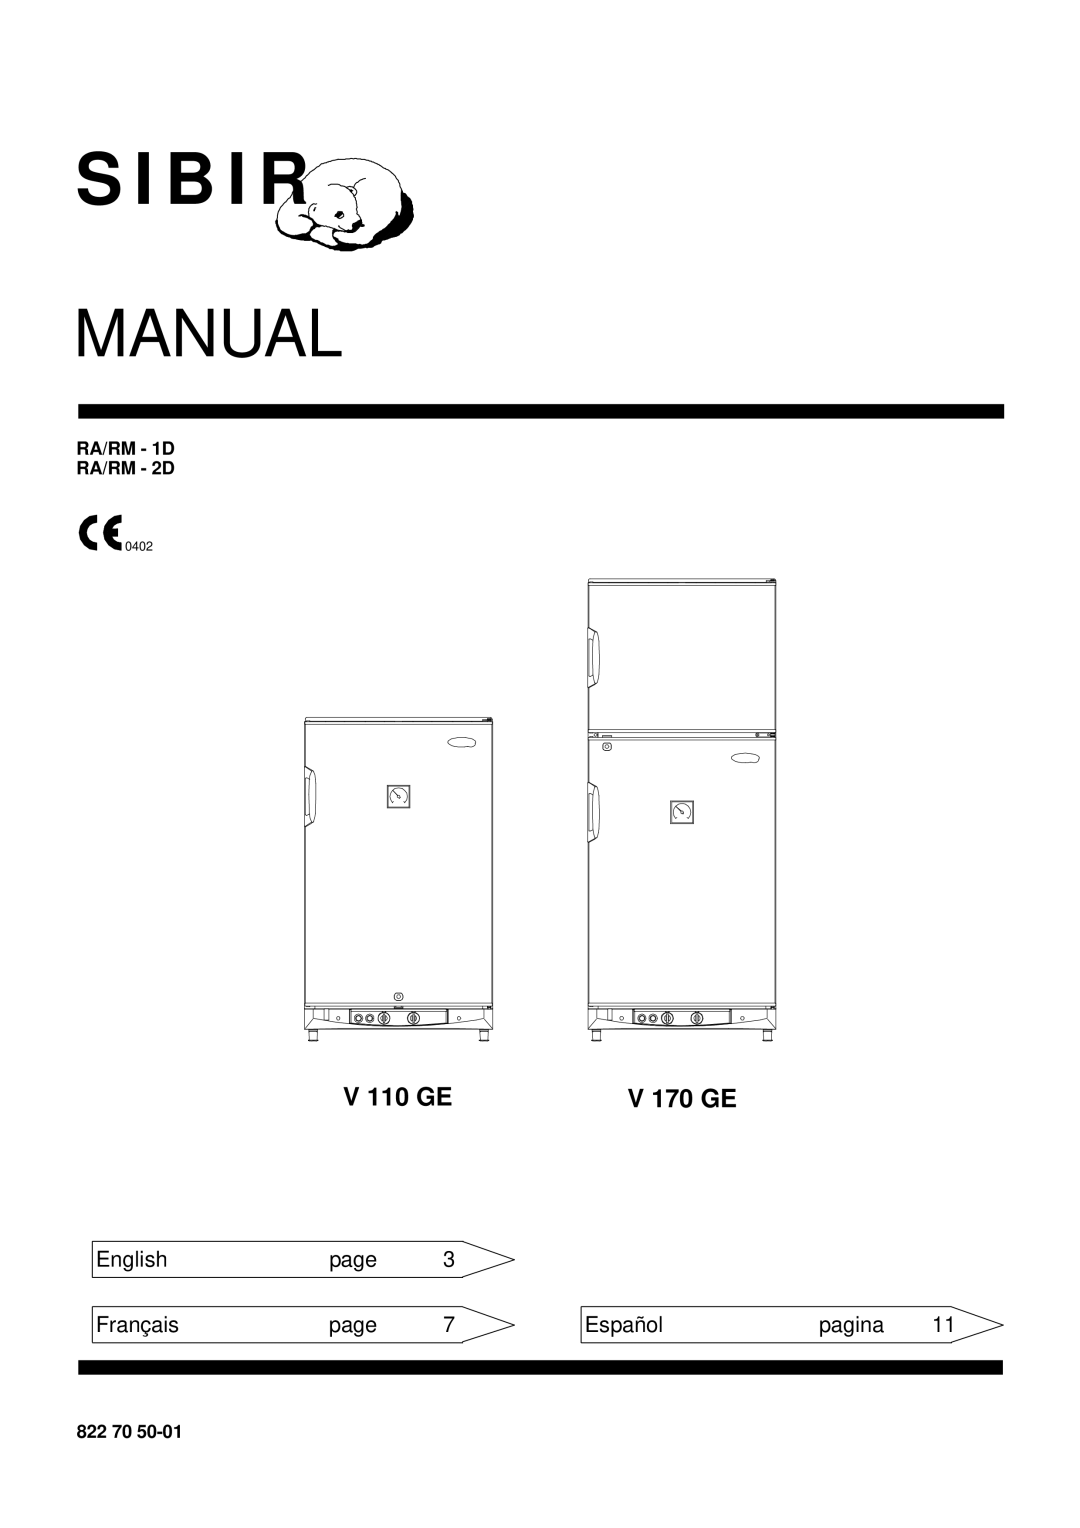 Sibir Optics RA 1-D, RM 1-D manual V 110 GE, V 170 GE, Manual, S I B I R, English, page, Français, Español, pagina, 0402 